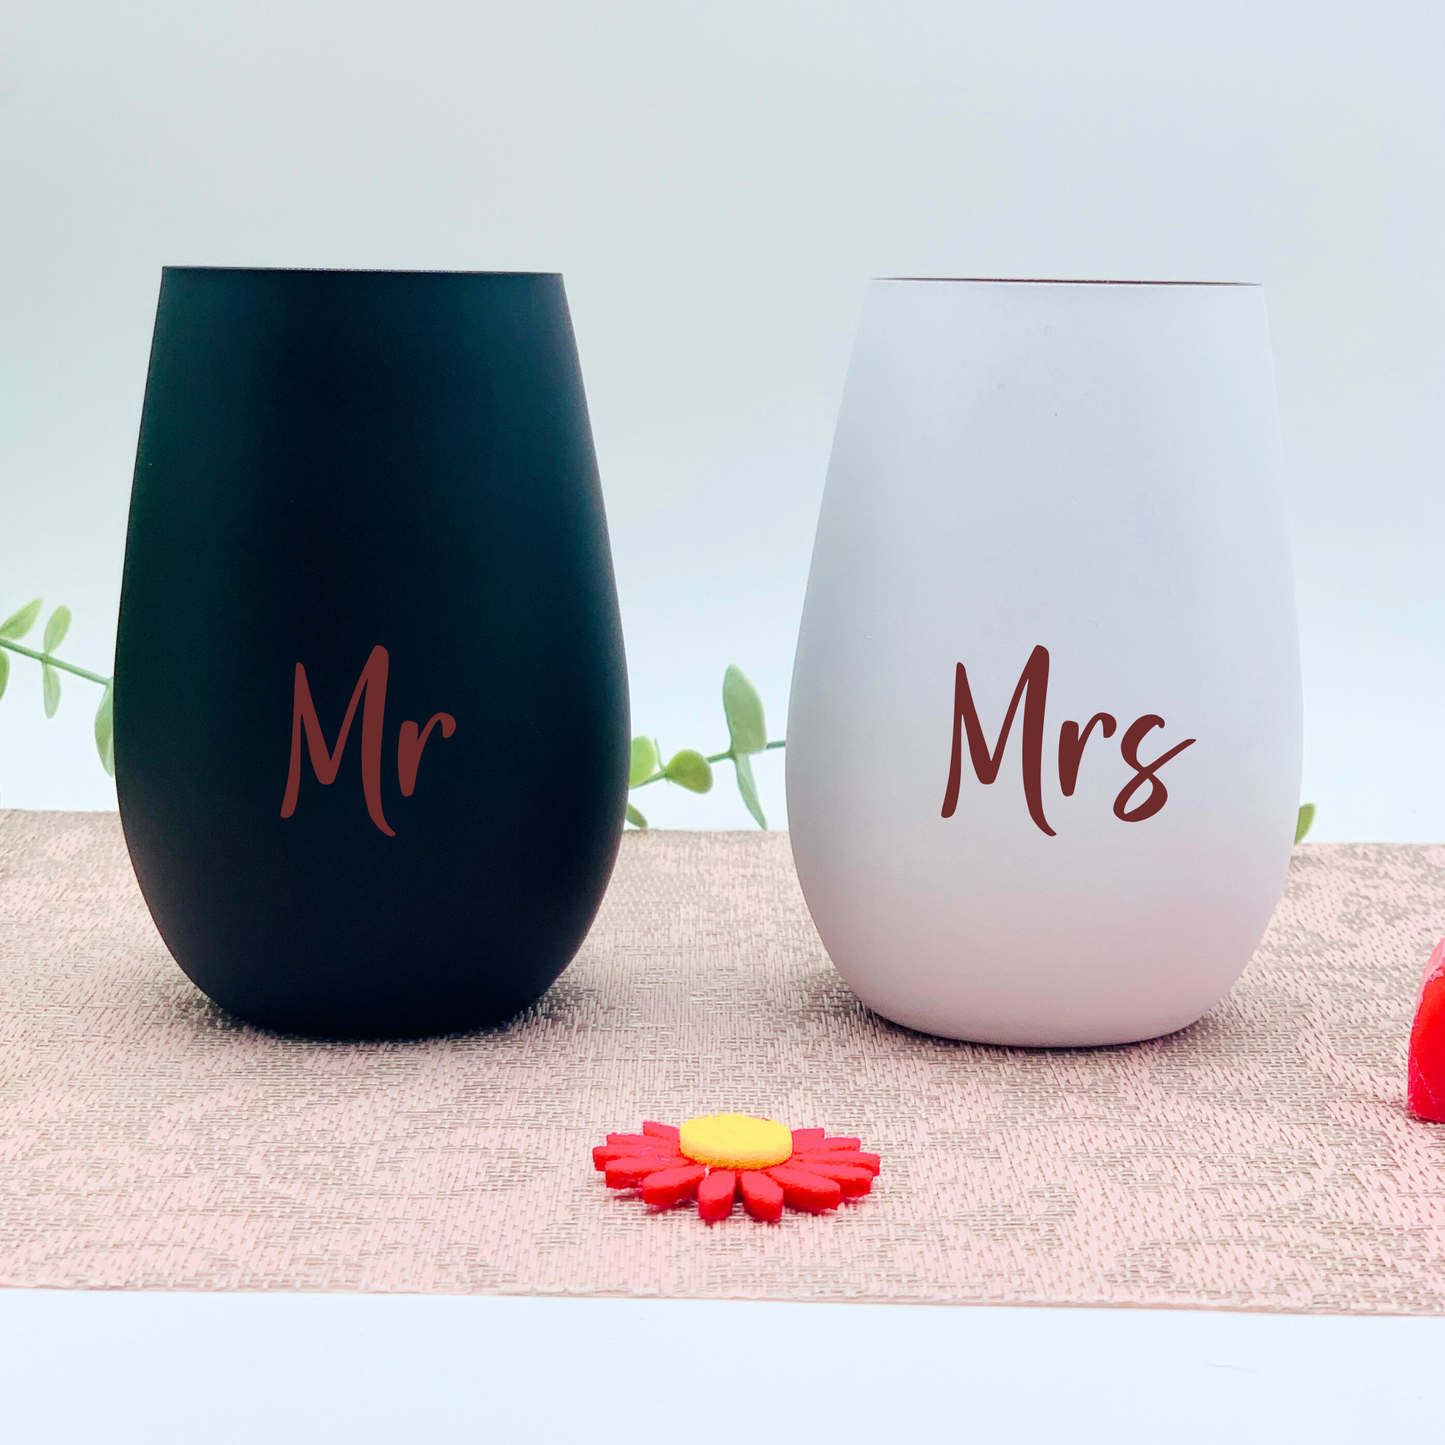 Trinkglas - mit Gravur personalisiert - Glas mit Namen - Hochzeitsgeschenk Mr & Mrs Set - Glas weiß/kupfer schwarz/kufper